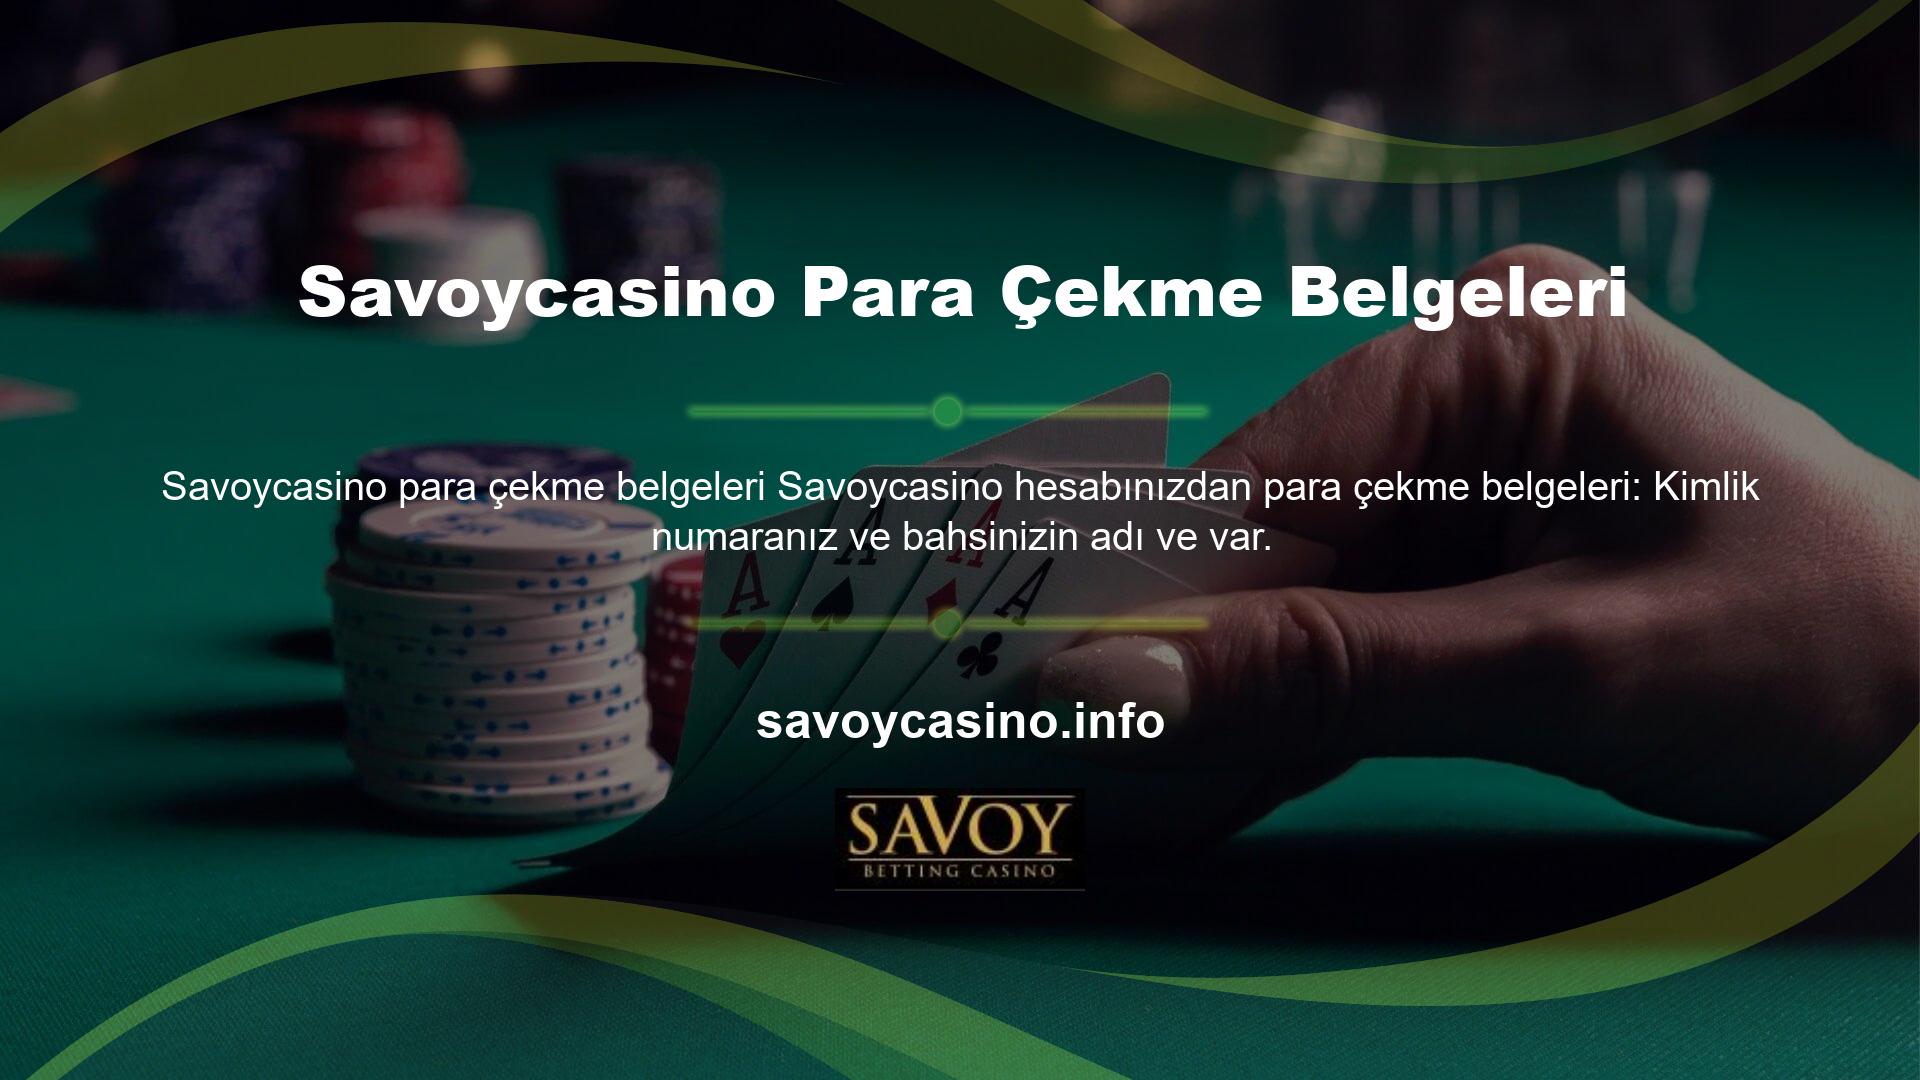 Deneyimli casino severler, yabancı Savoycasino BTK’nın, çevrimiçi casino sitesi Savoycasino de dahil olmak üzere Türk casino endüstrisine girmesinin yasak olduğunu biliyor